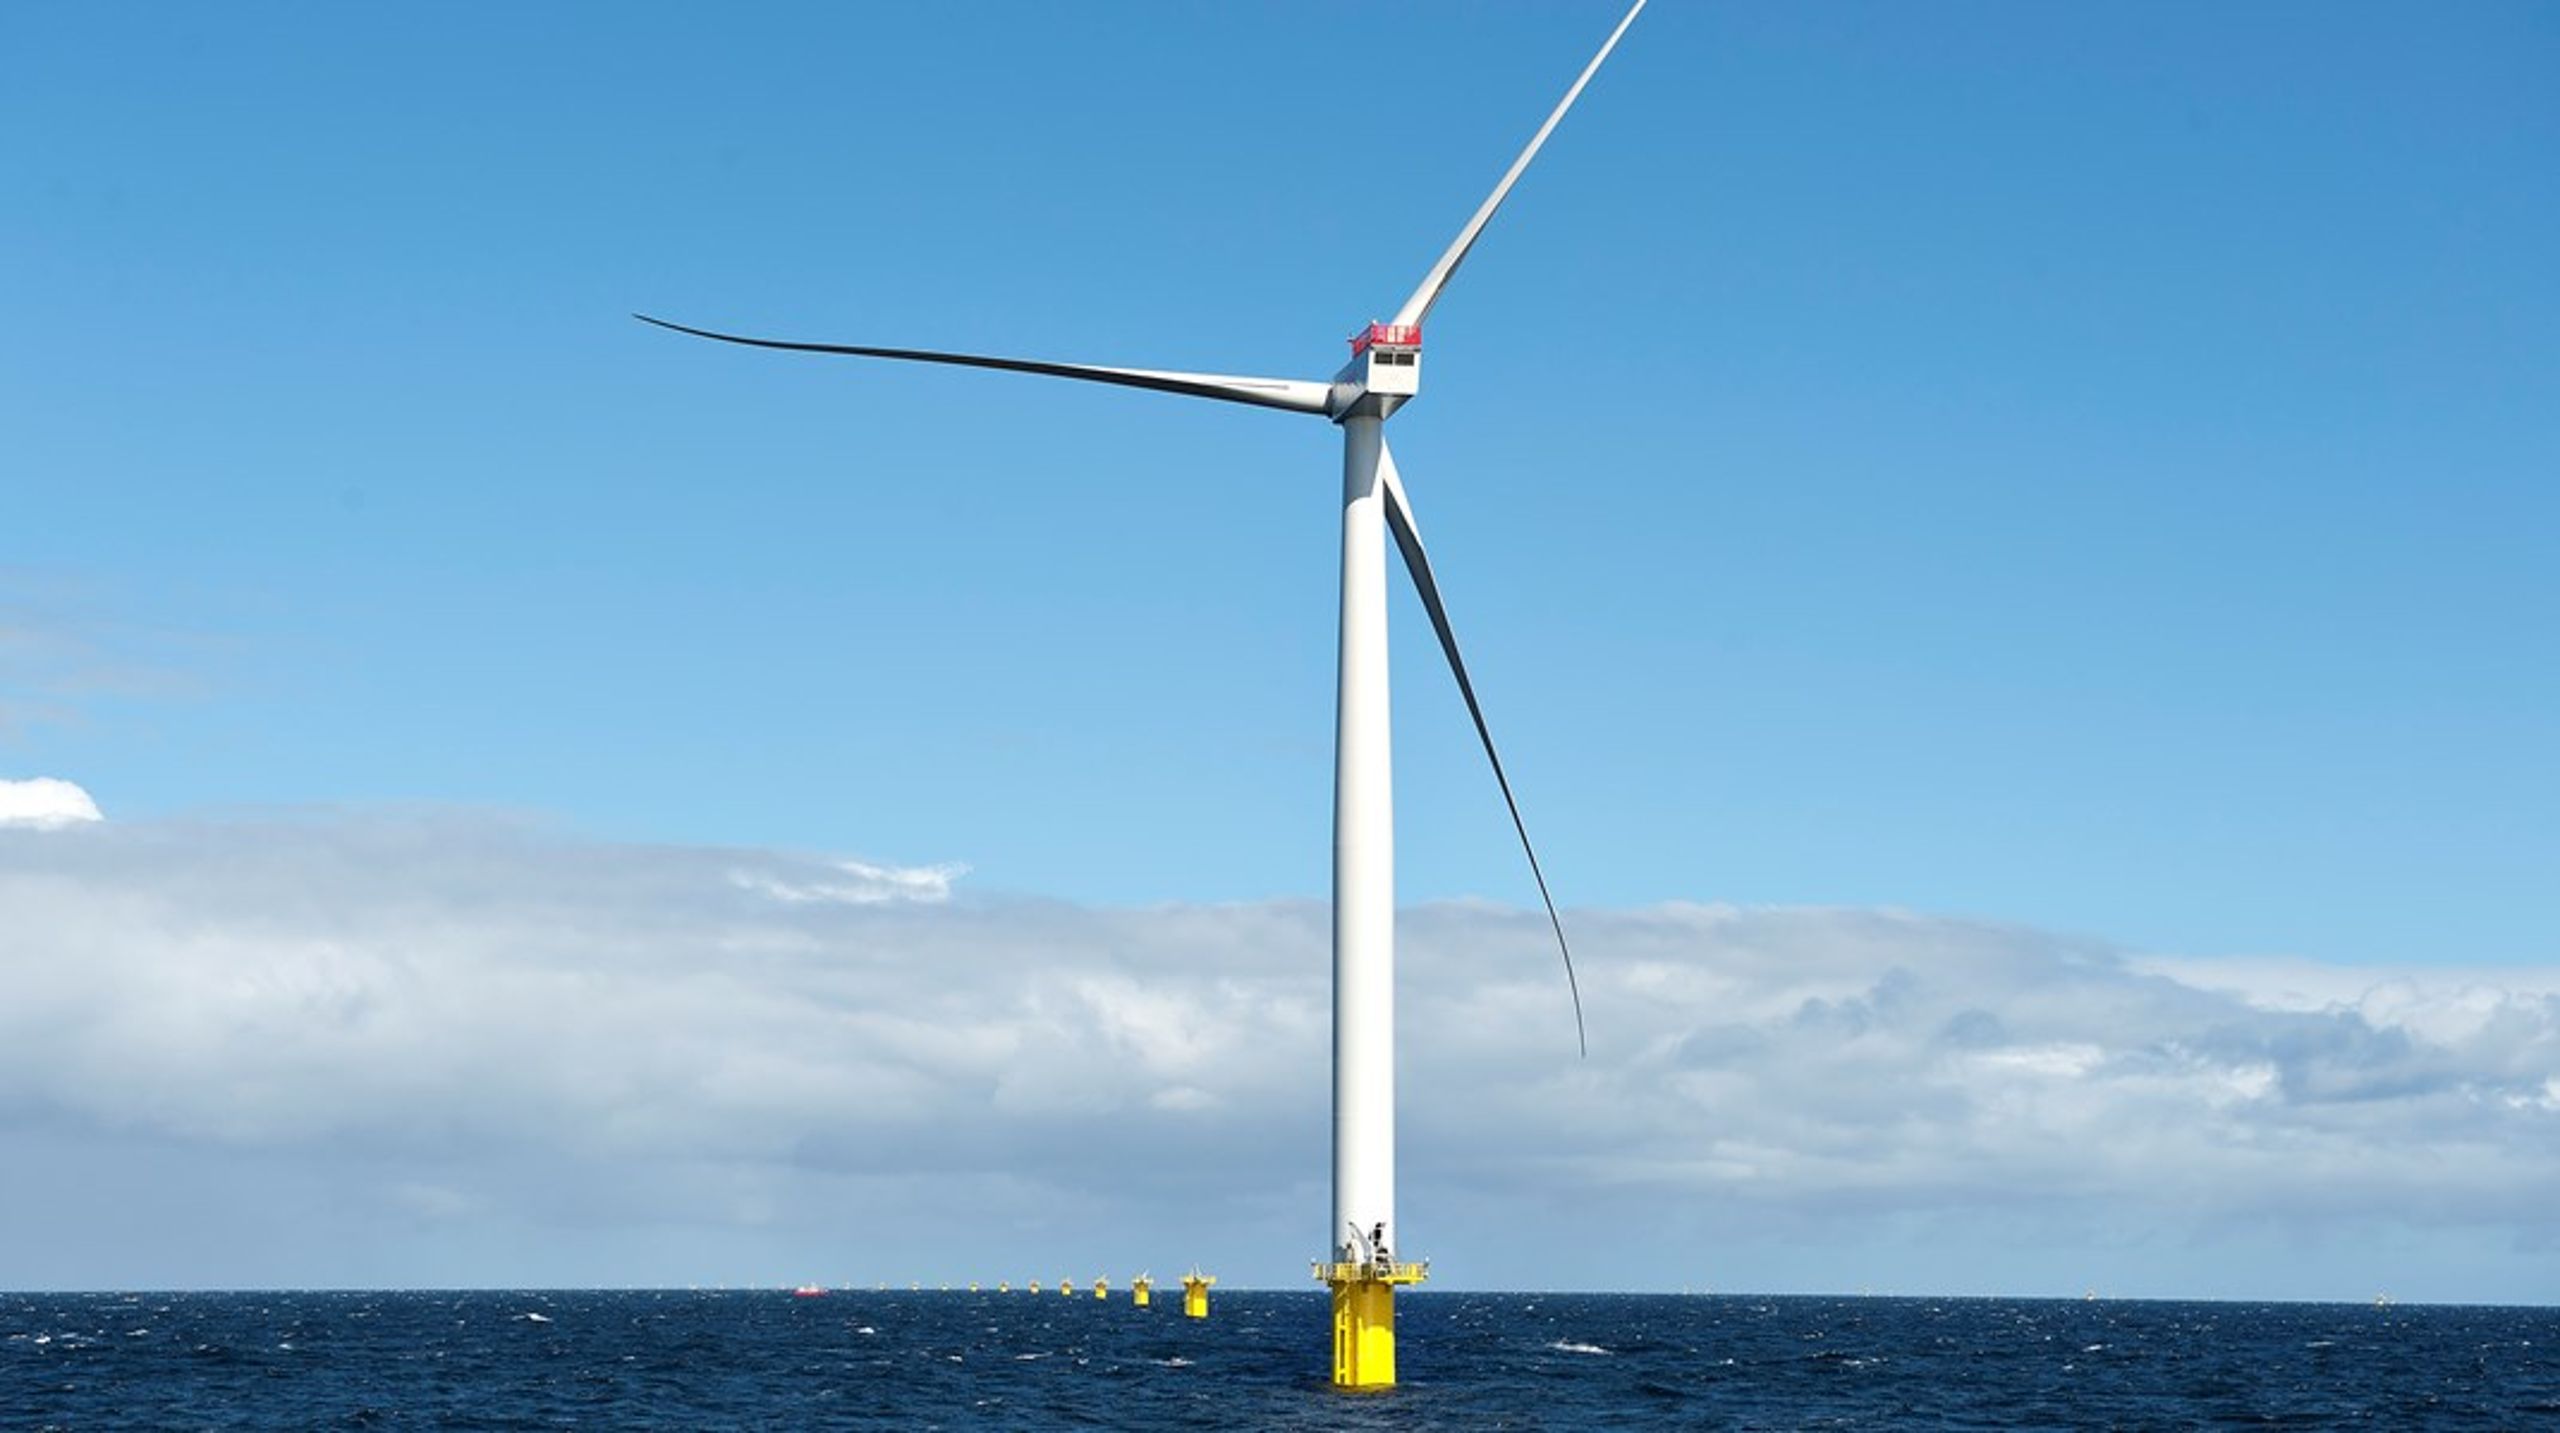 Ambitionen om at dække tre procent af det globale
marked er inden for rækkevidde. Danmark har verdens førende vindindustri, en
gunstig geografisk placering og et velintegreret energisystem til at
transportere de grønne brændstoffer, skriver Troels Ranis.